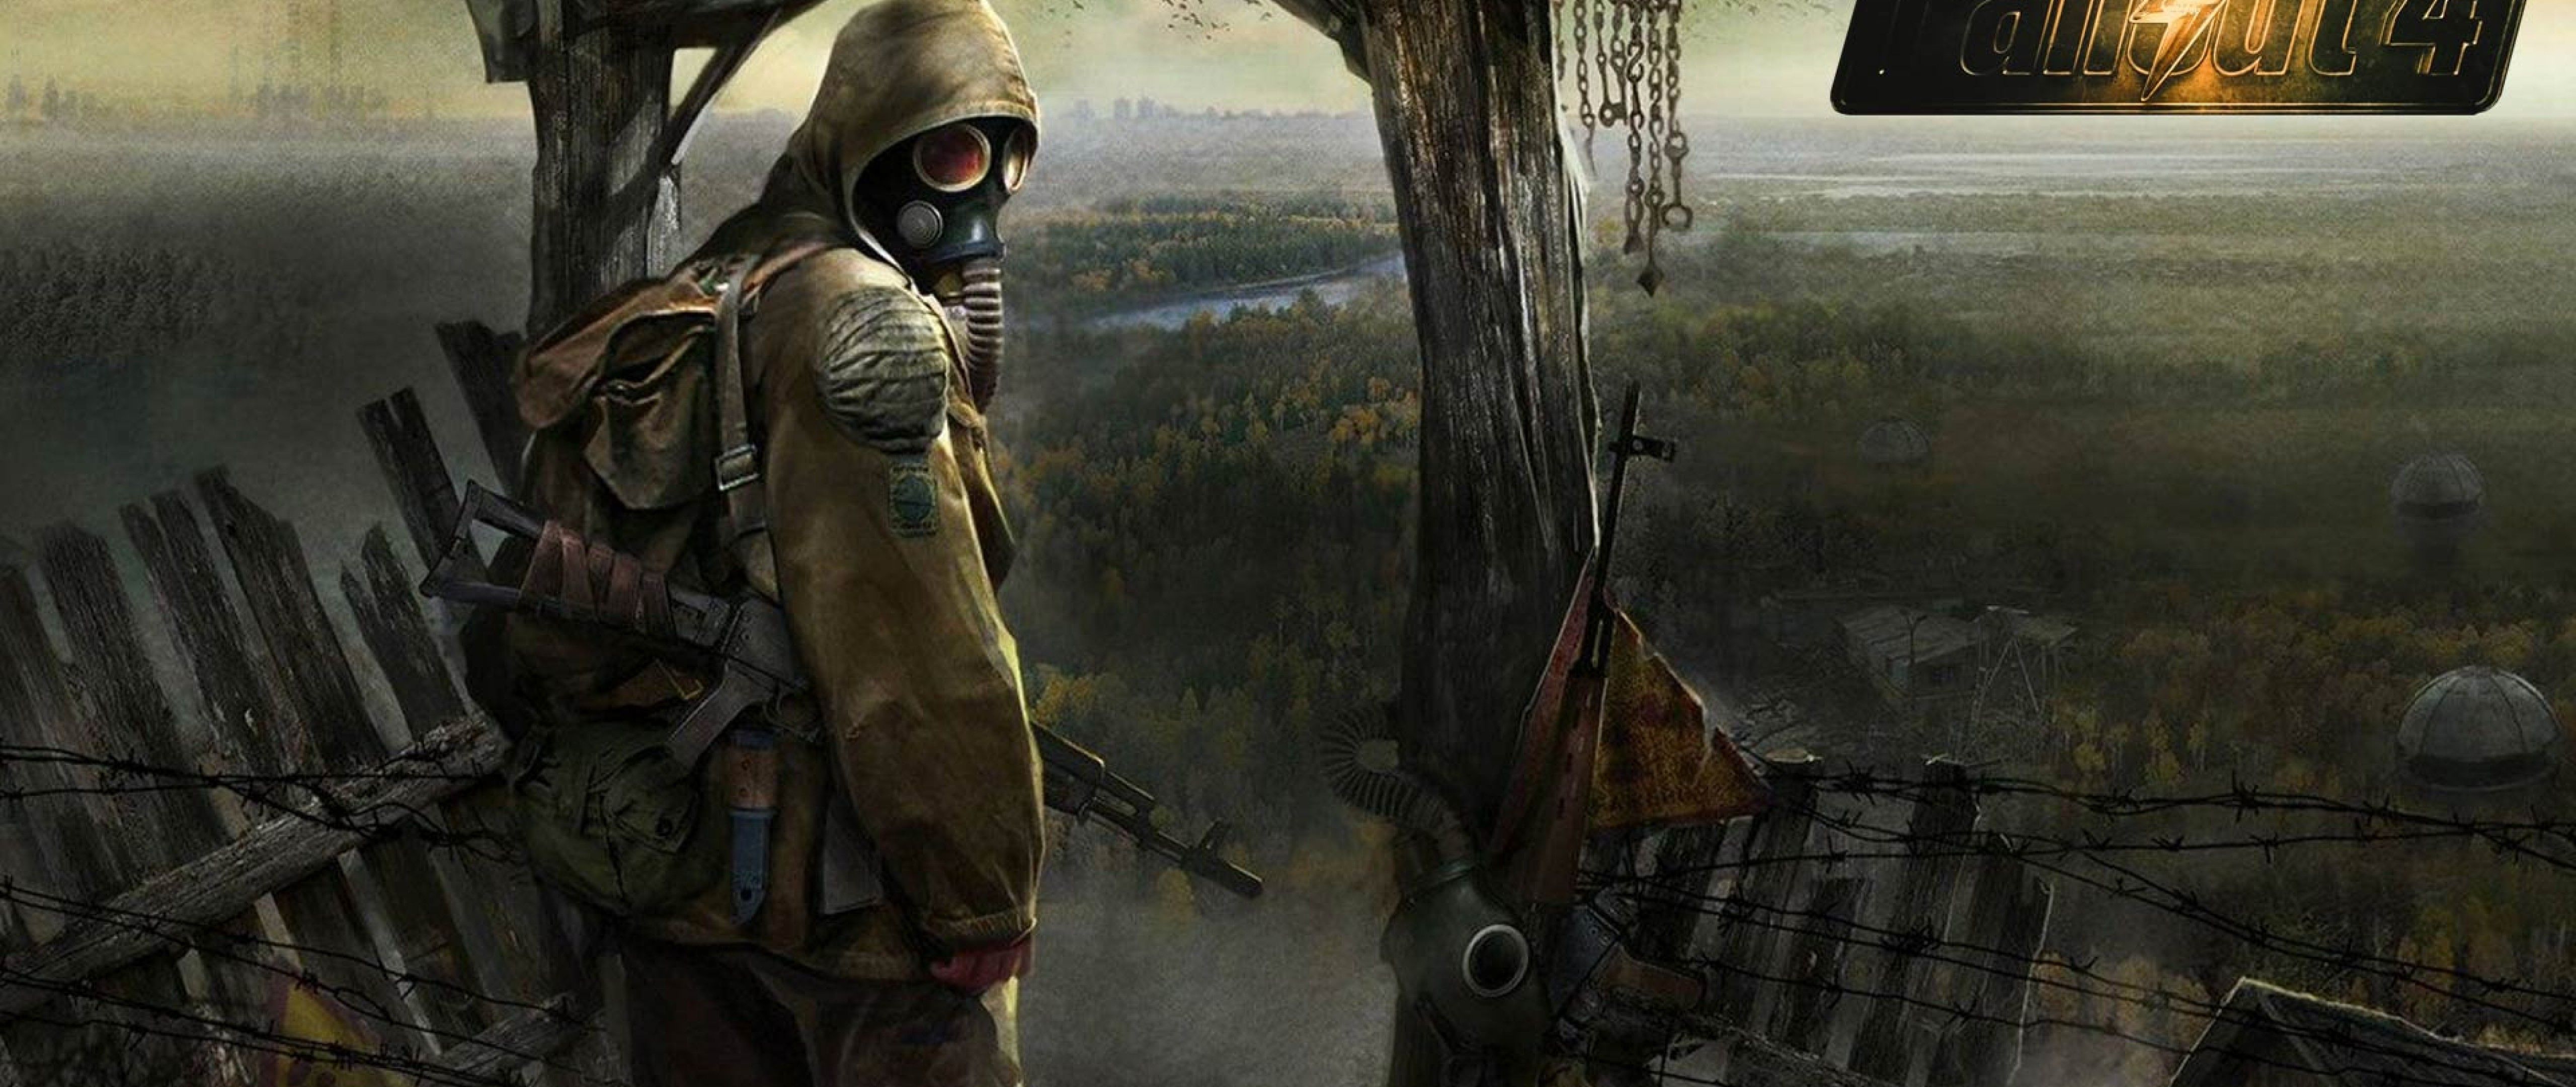 Fallout 4 4K Wallpaper